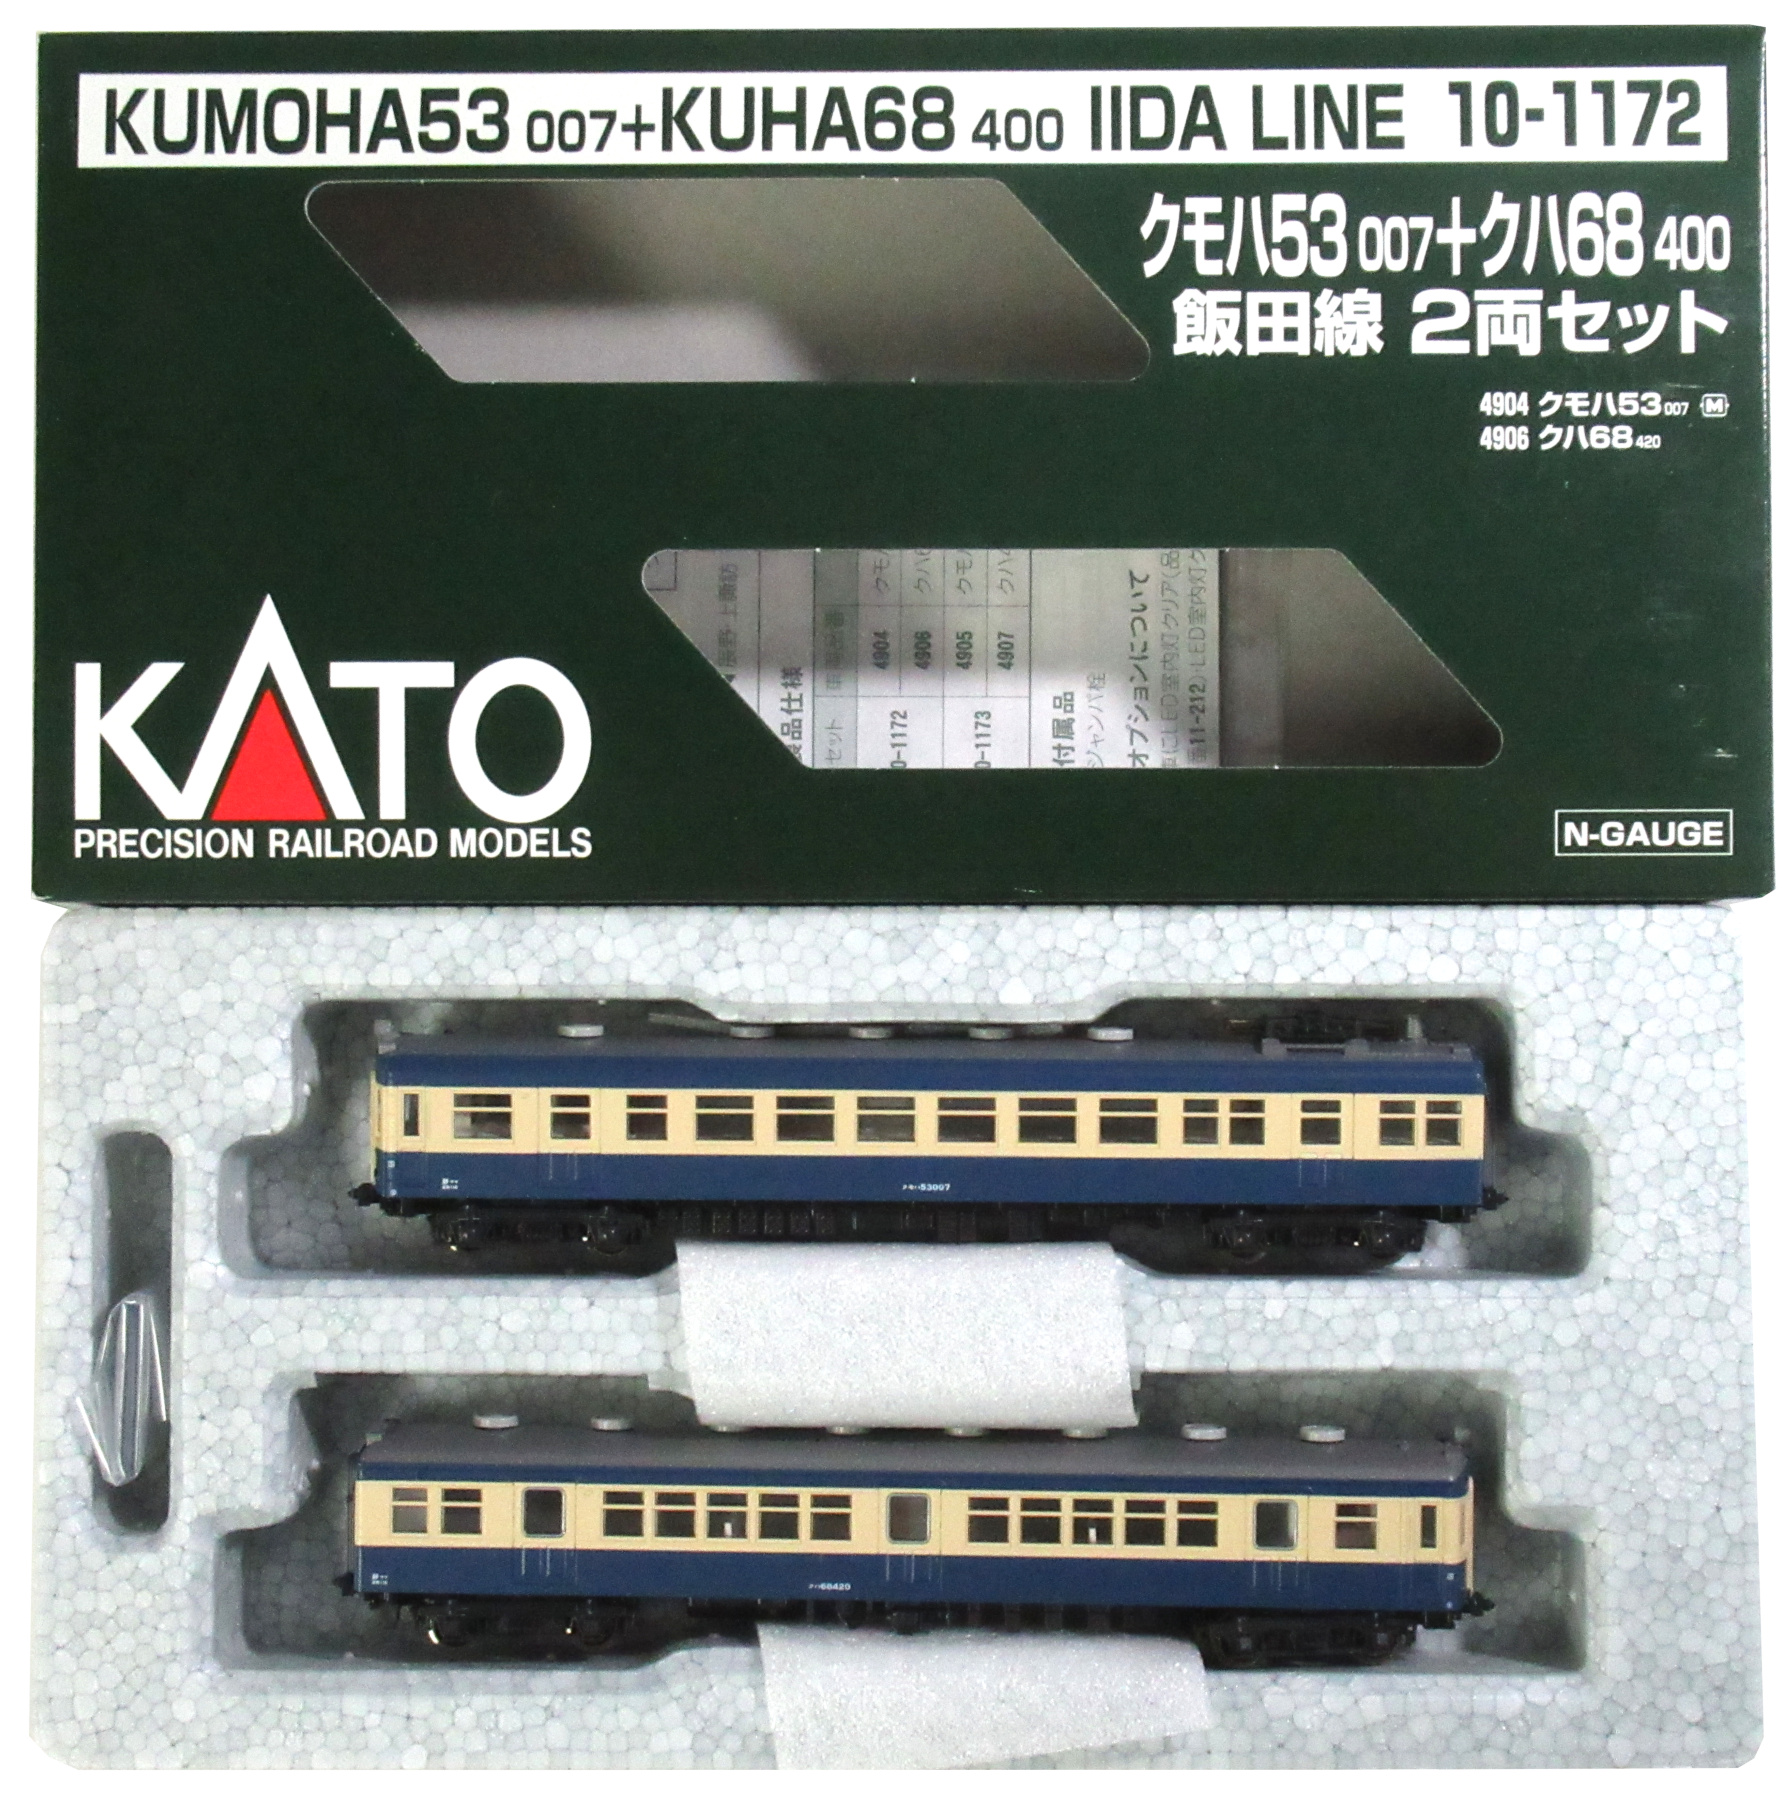 公式]鉄道模型(10-1172クモハ53-007 + クハ68-400 飯田線 2両セット